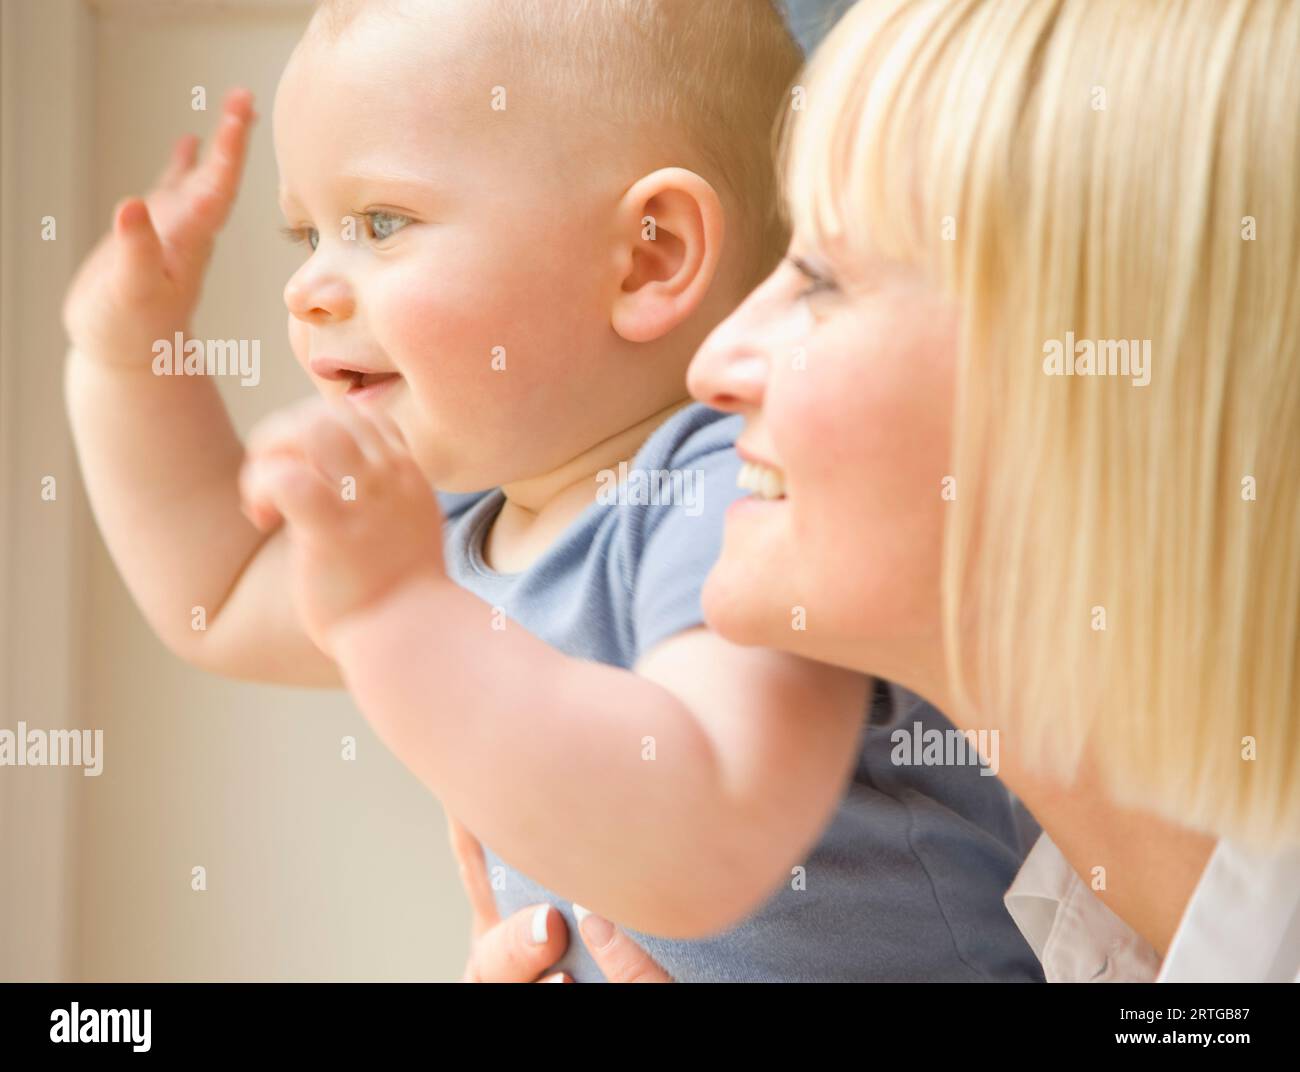 Cerca de un bebé agitando los brazos con su madre sosteniendo él Foto de stock